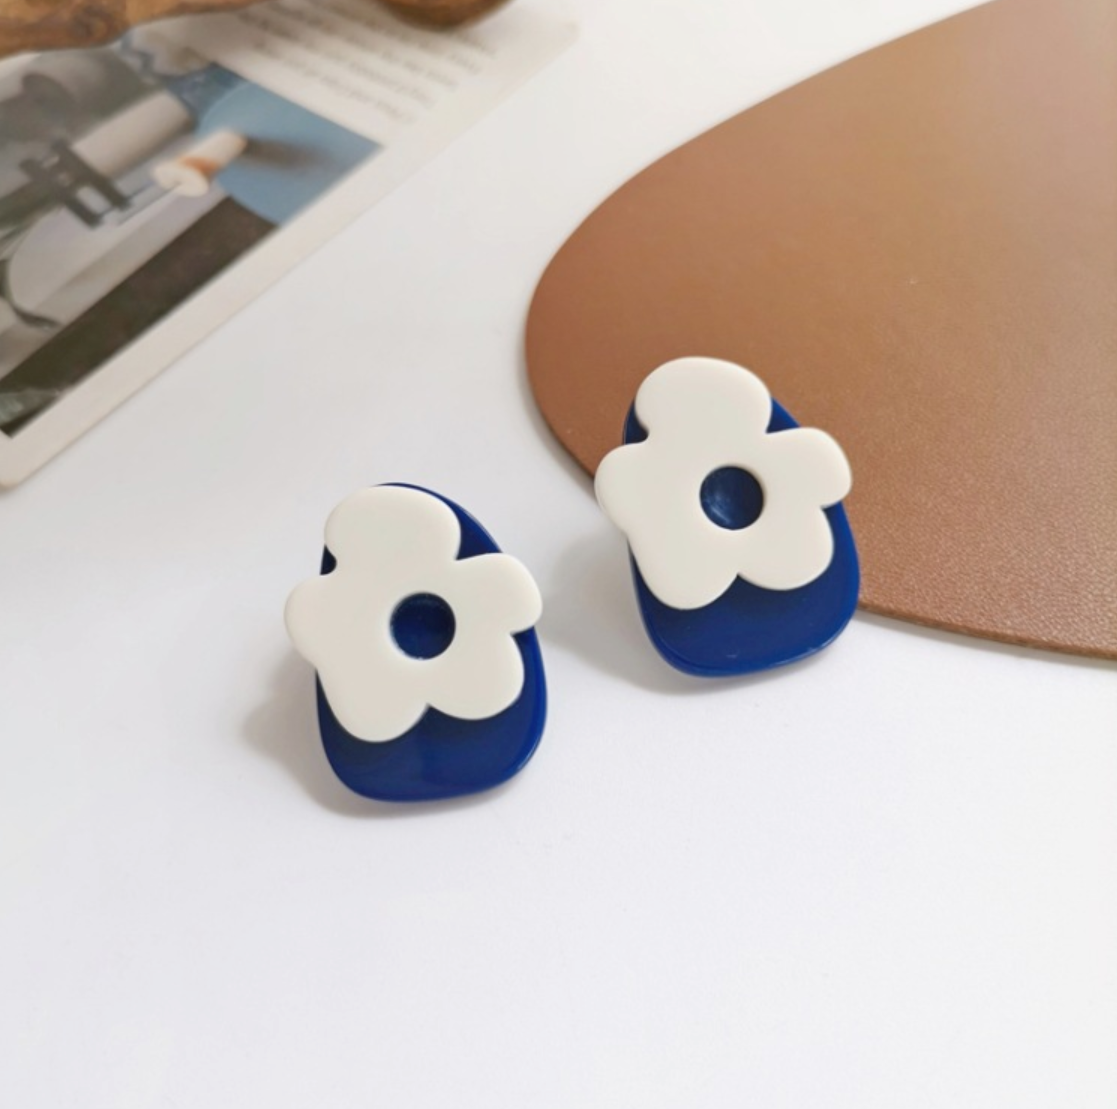 Blue white flower earrings